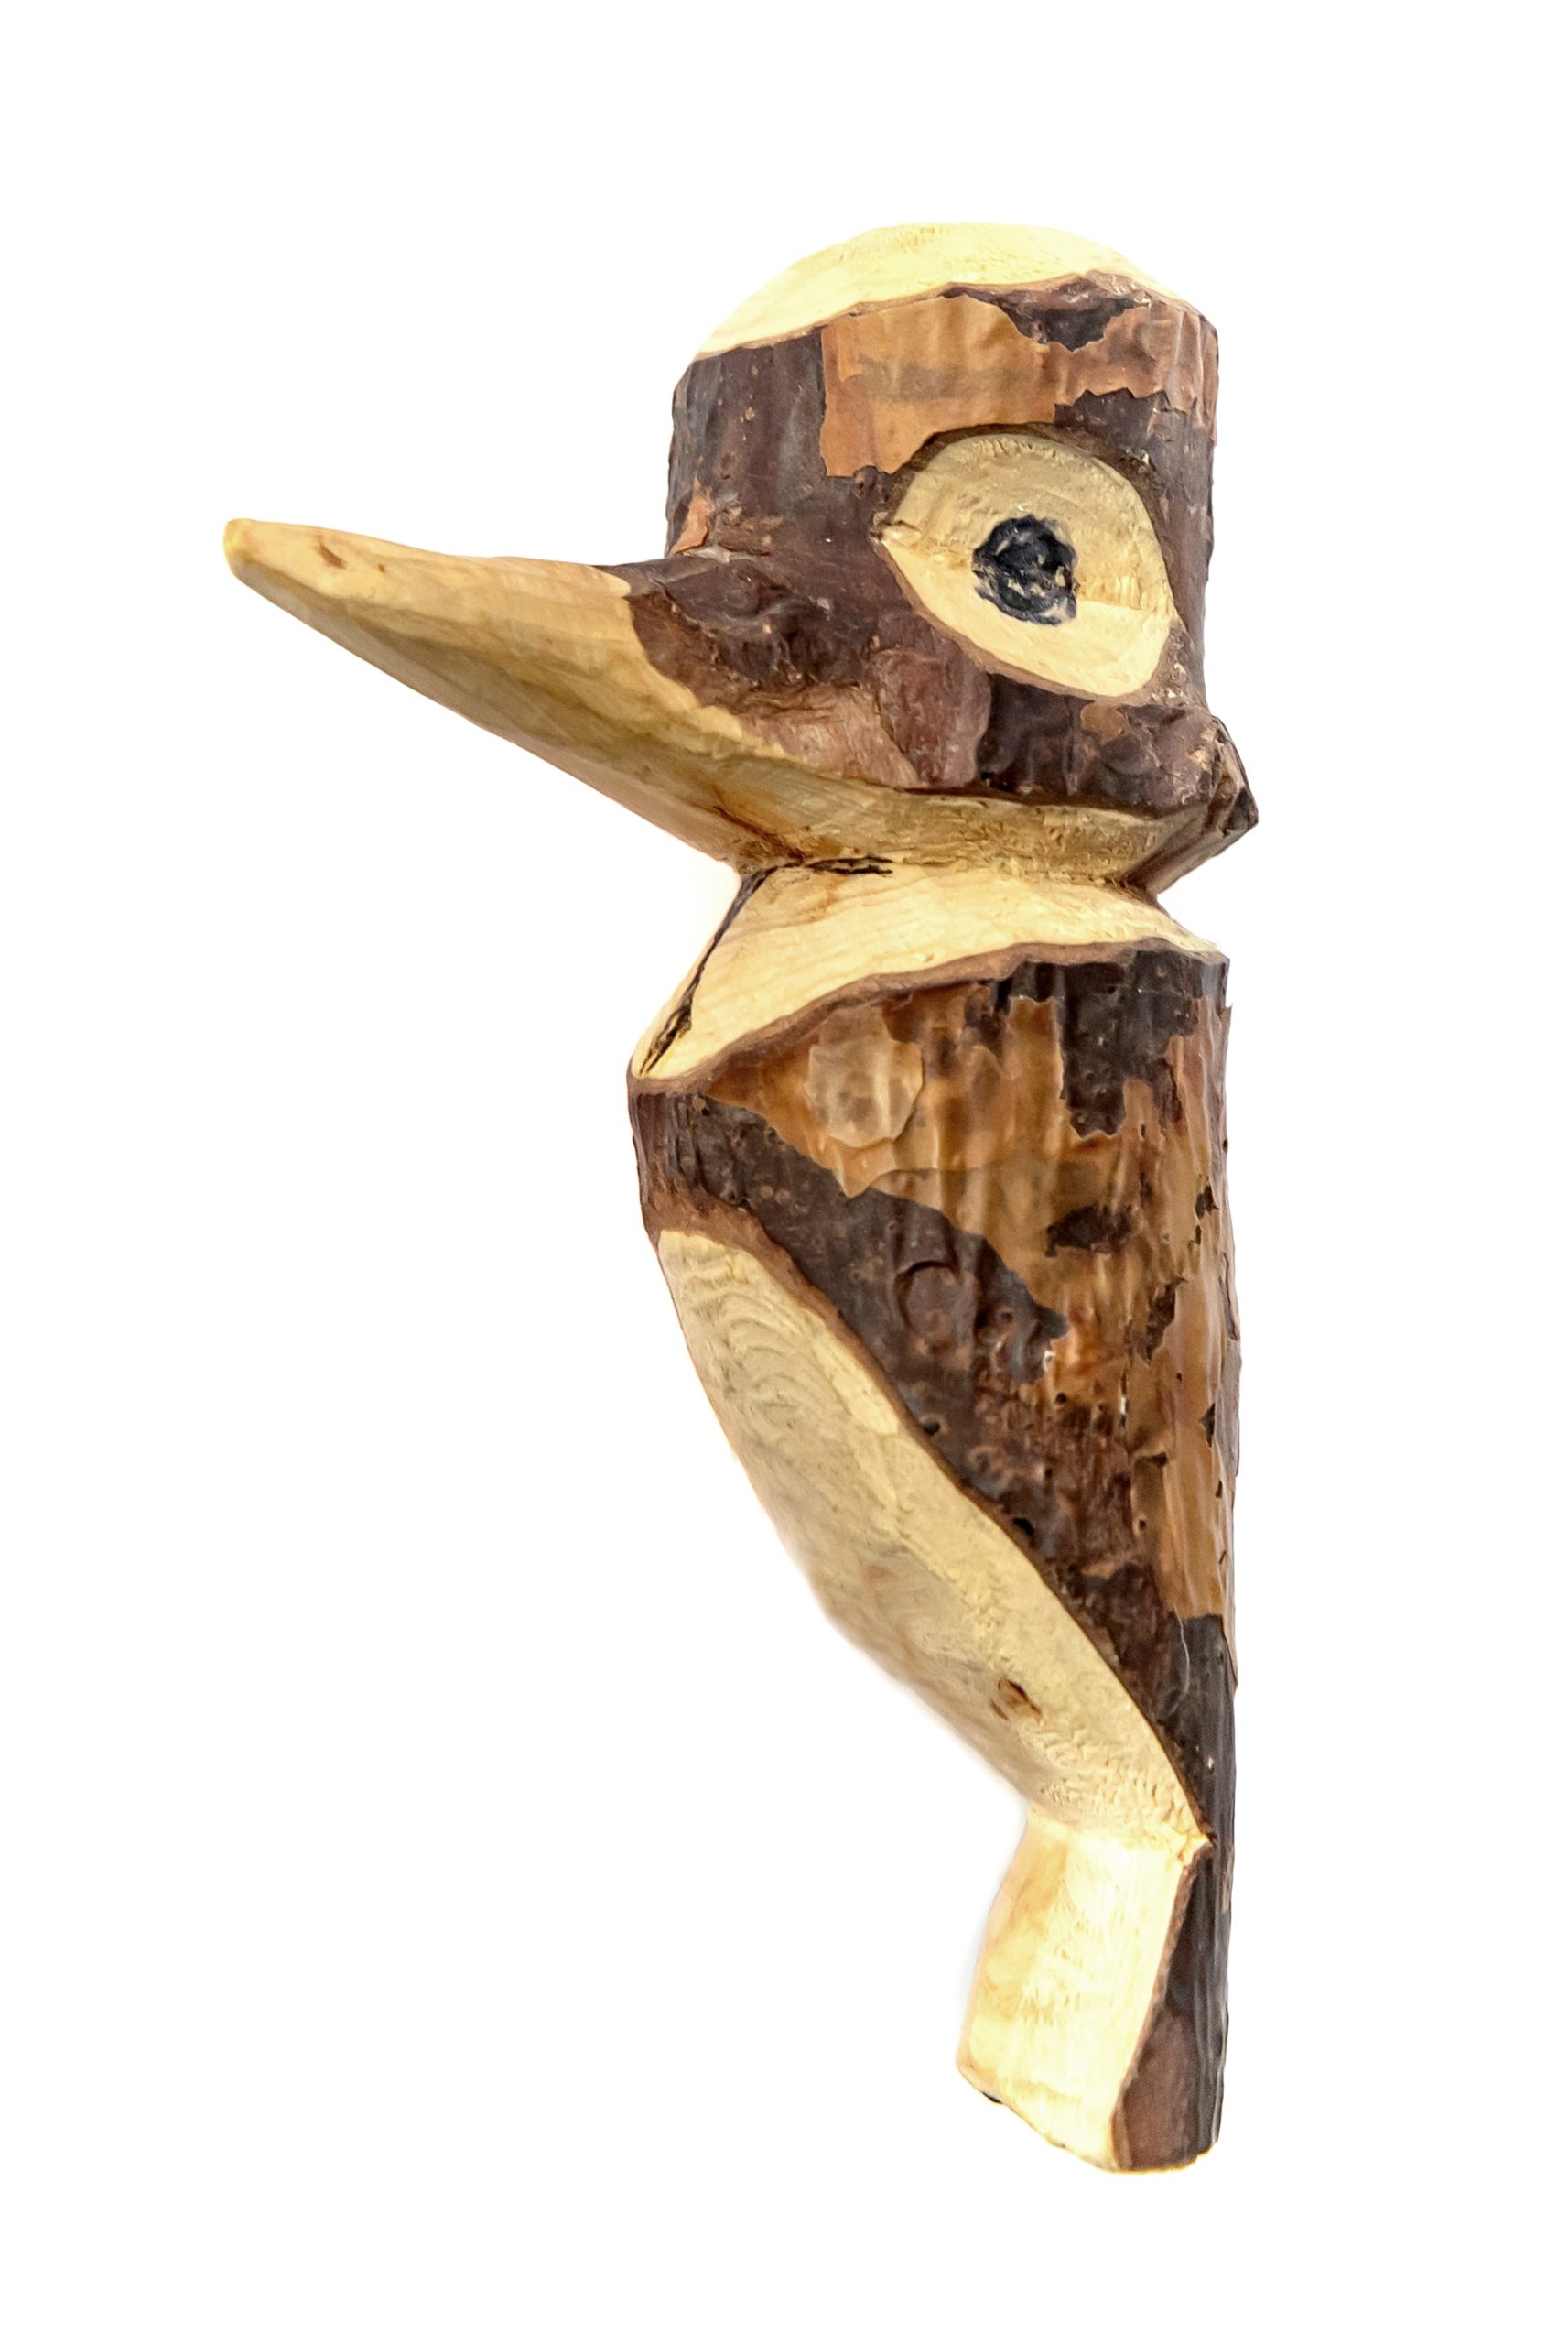 H. A. Čigriejaus iš medžio išdrožtas paukščiukas „Juozaputis“. Apie 1989 m. MLLM 127802